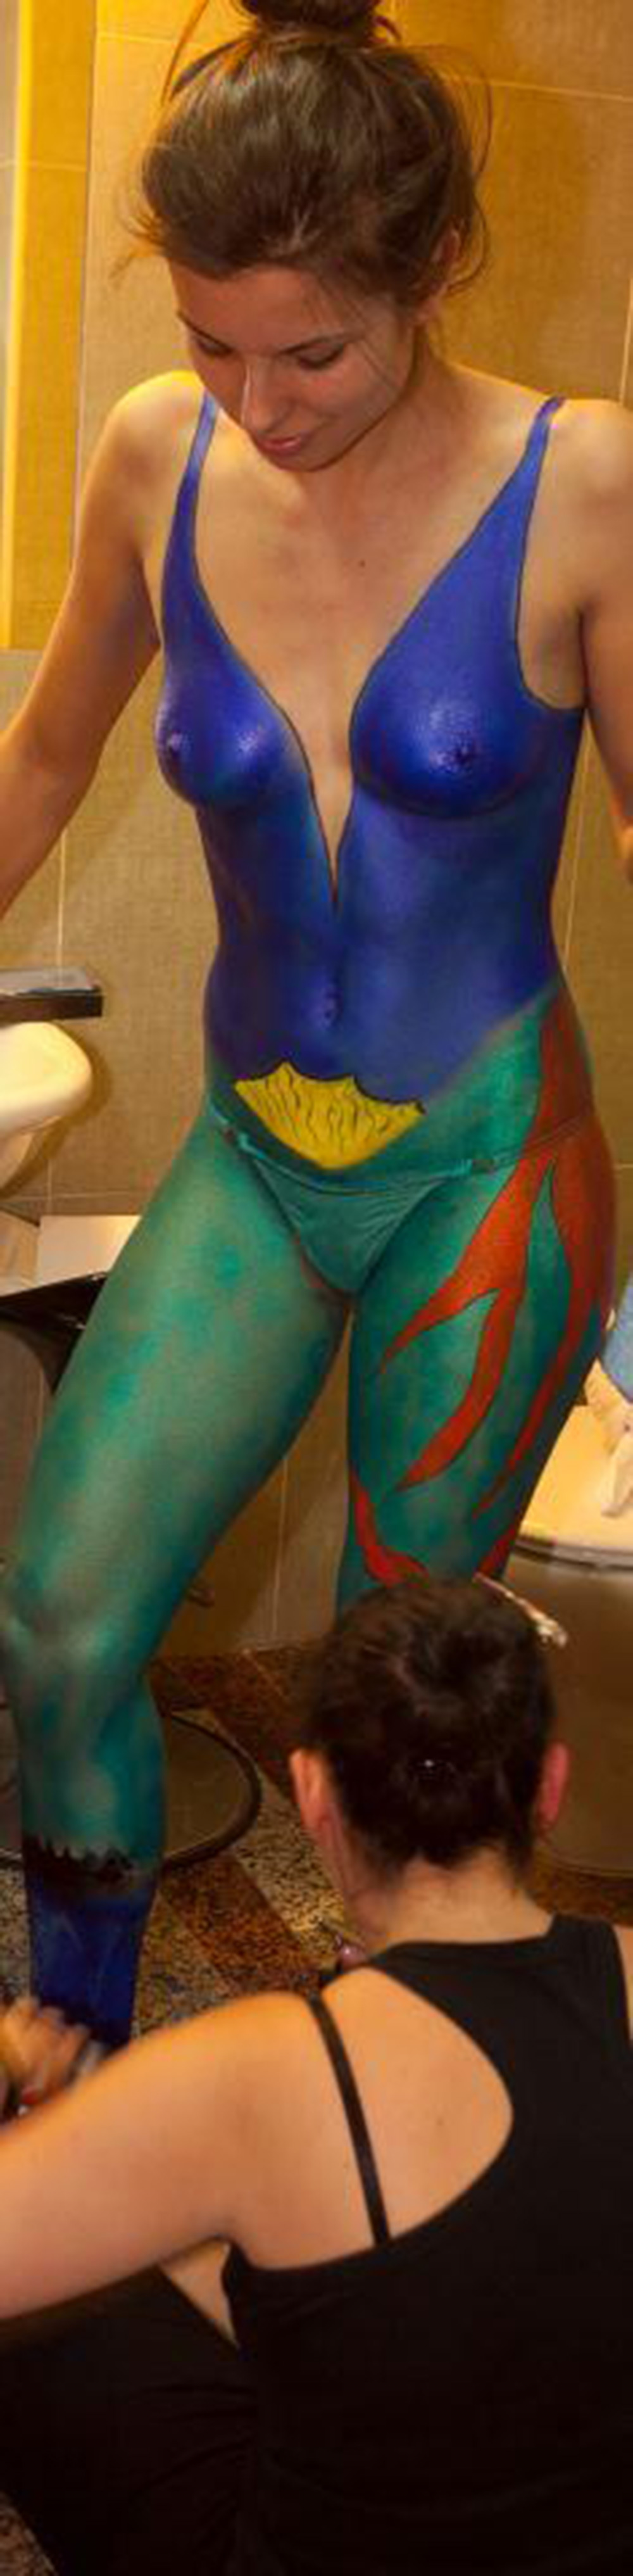 Body paint - Superhéroe comic